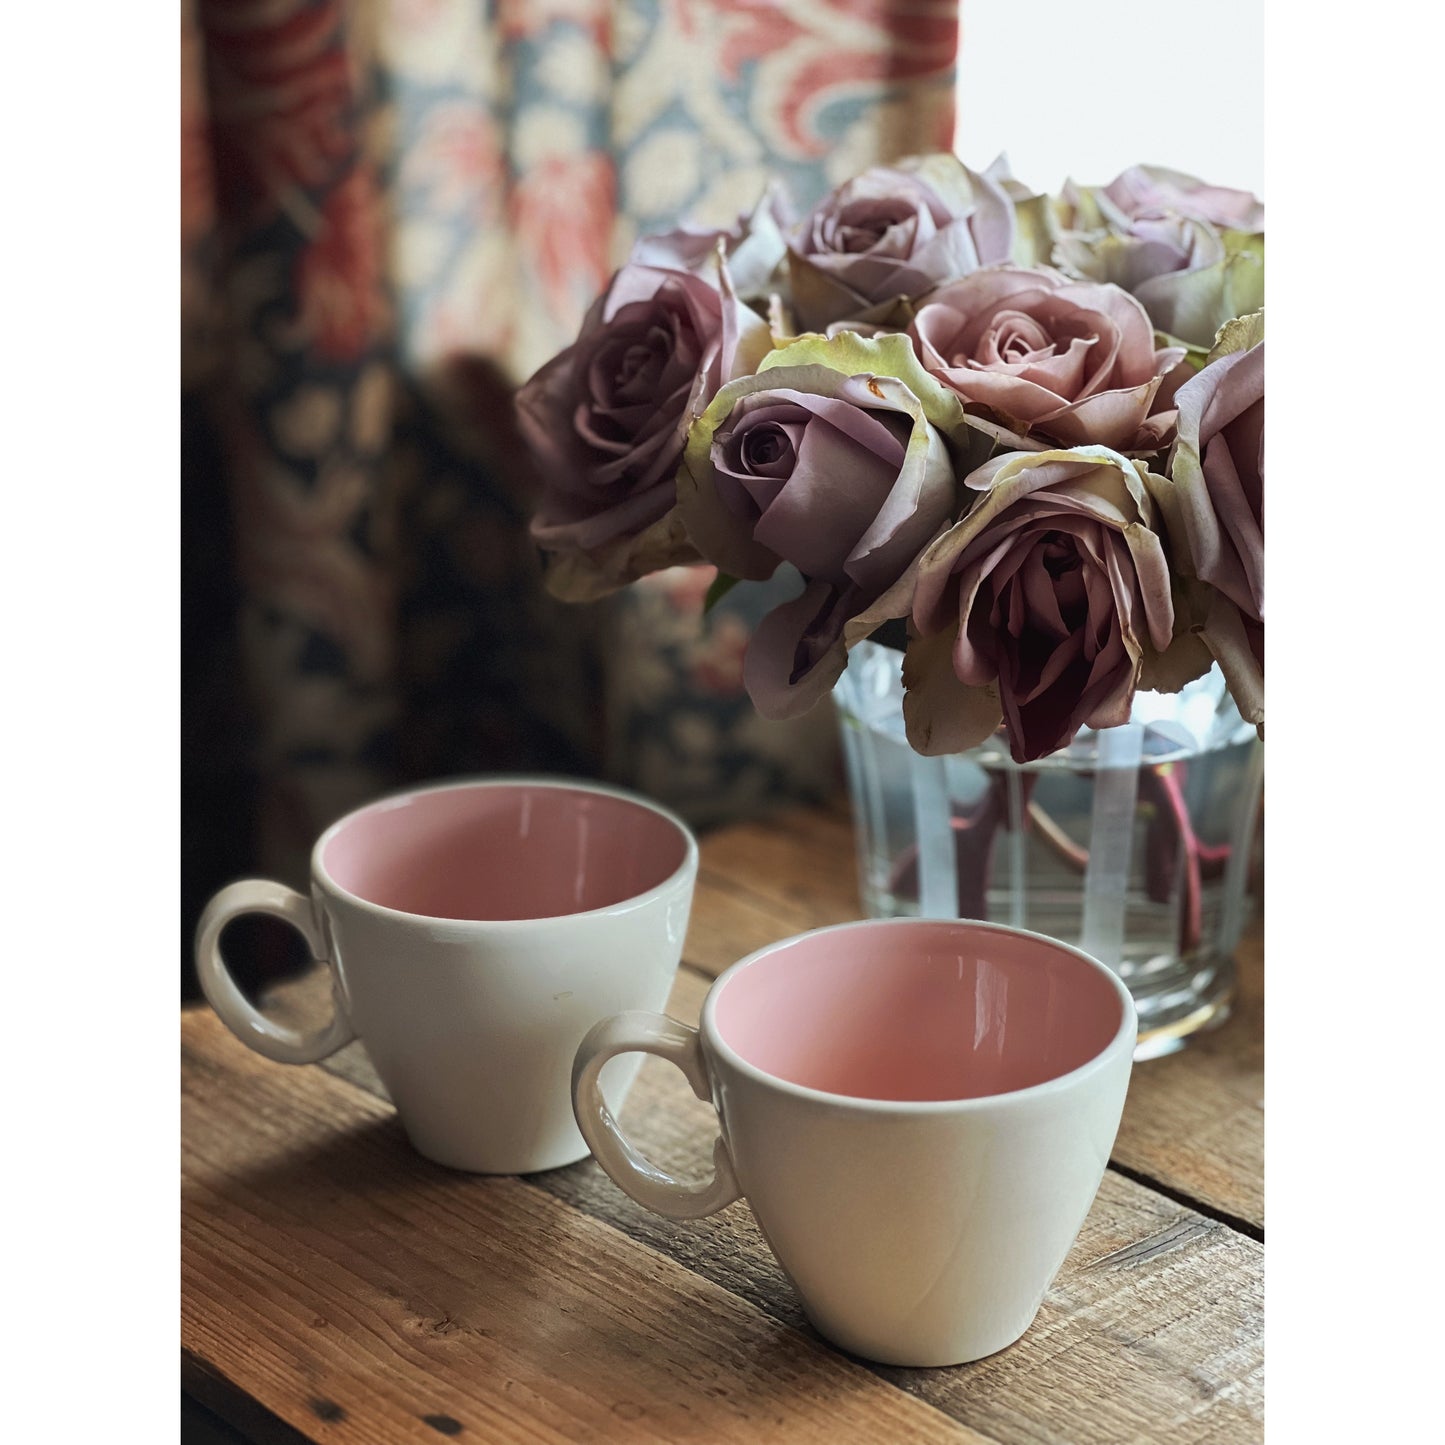 Pair of Pink Floral Teacups